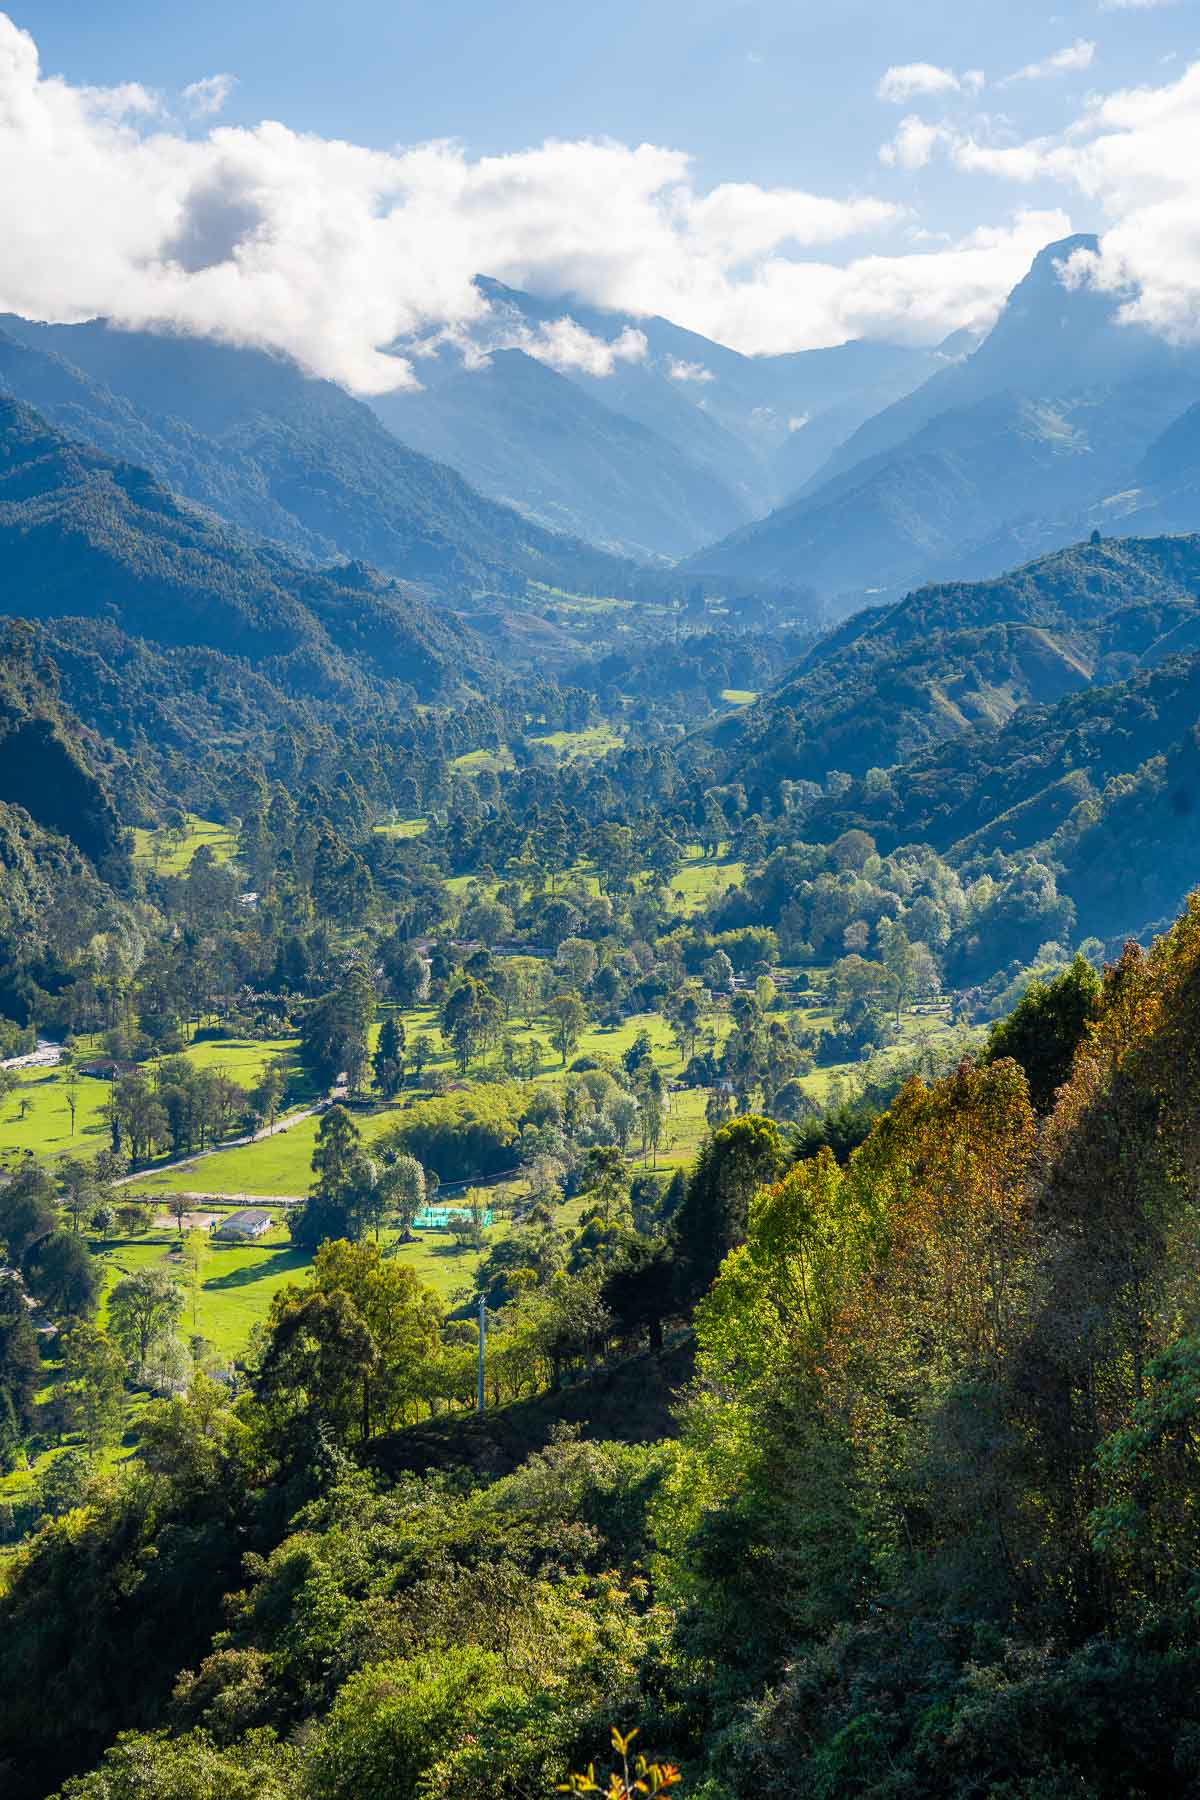 View of the lush green valley from Mirador de Salento